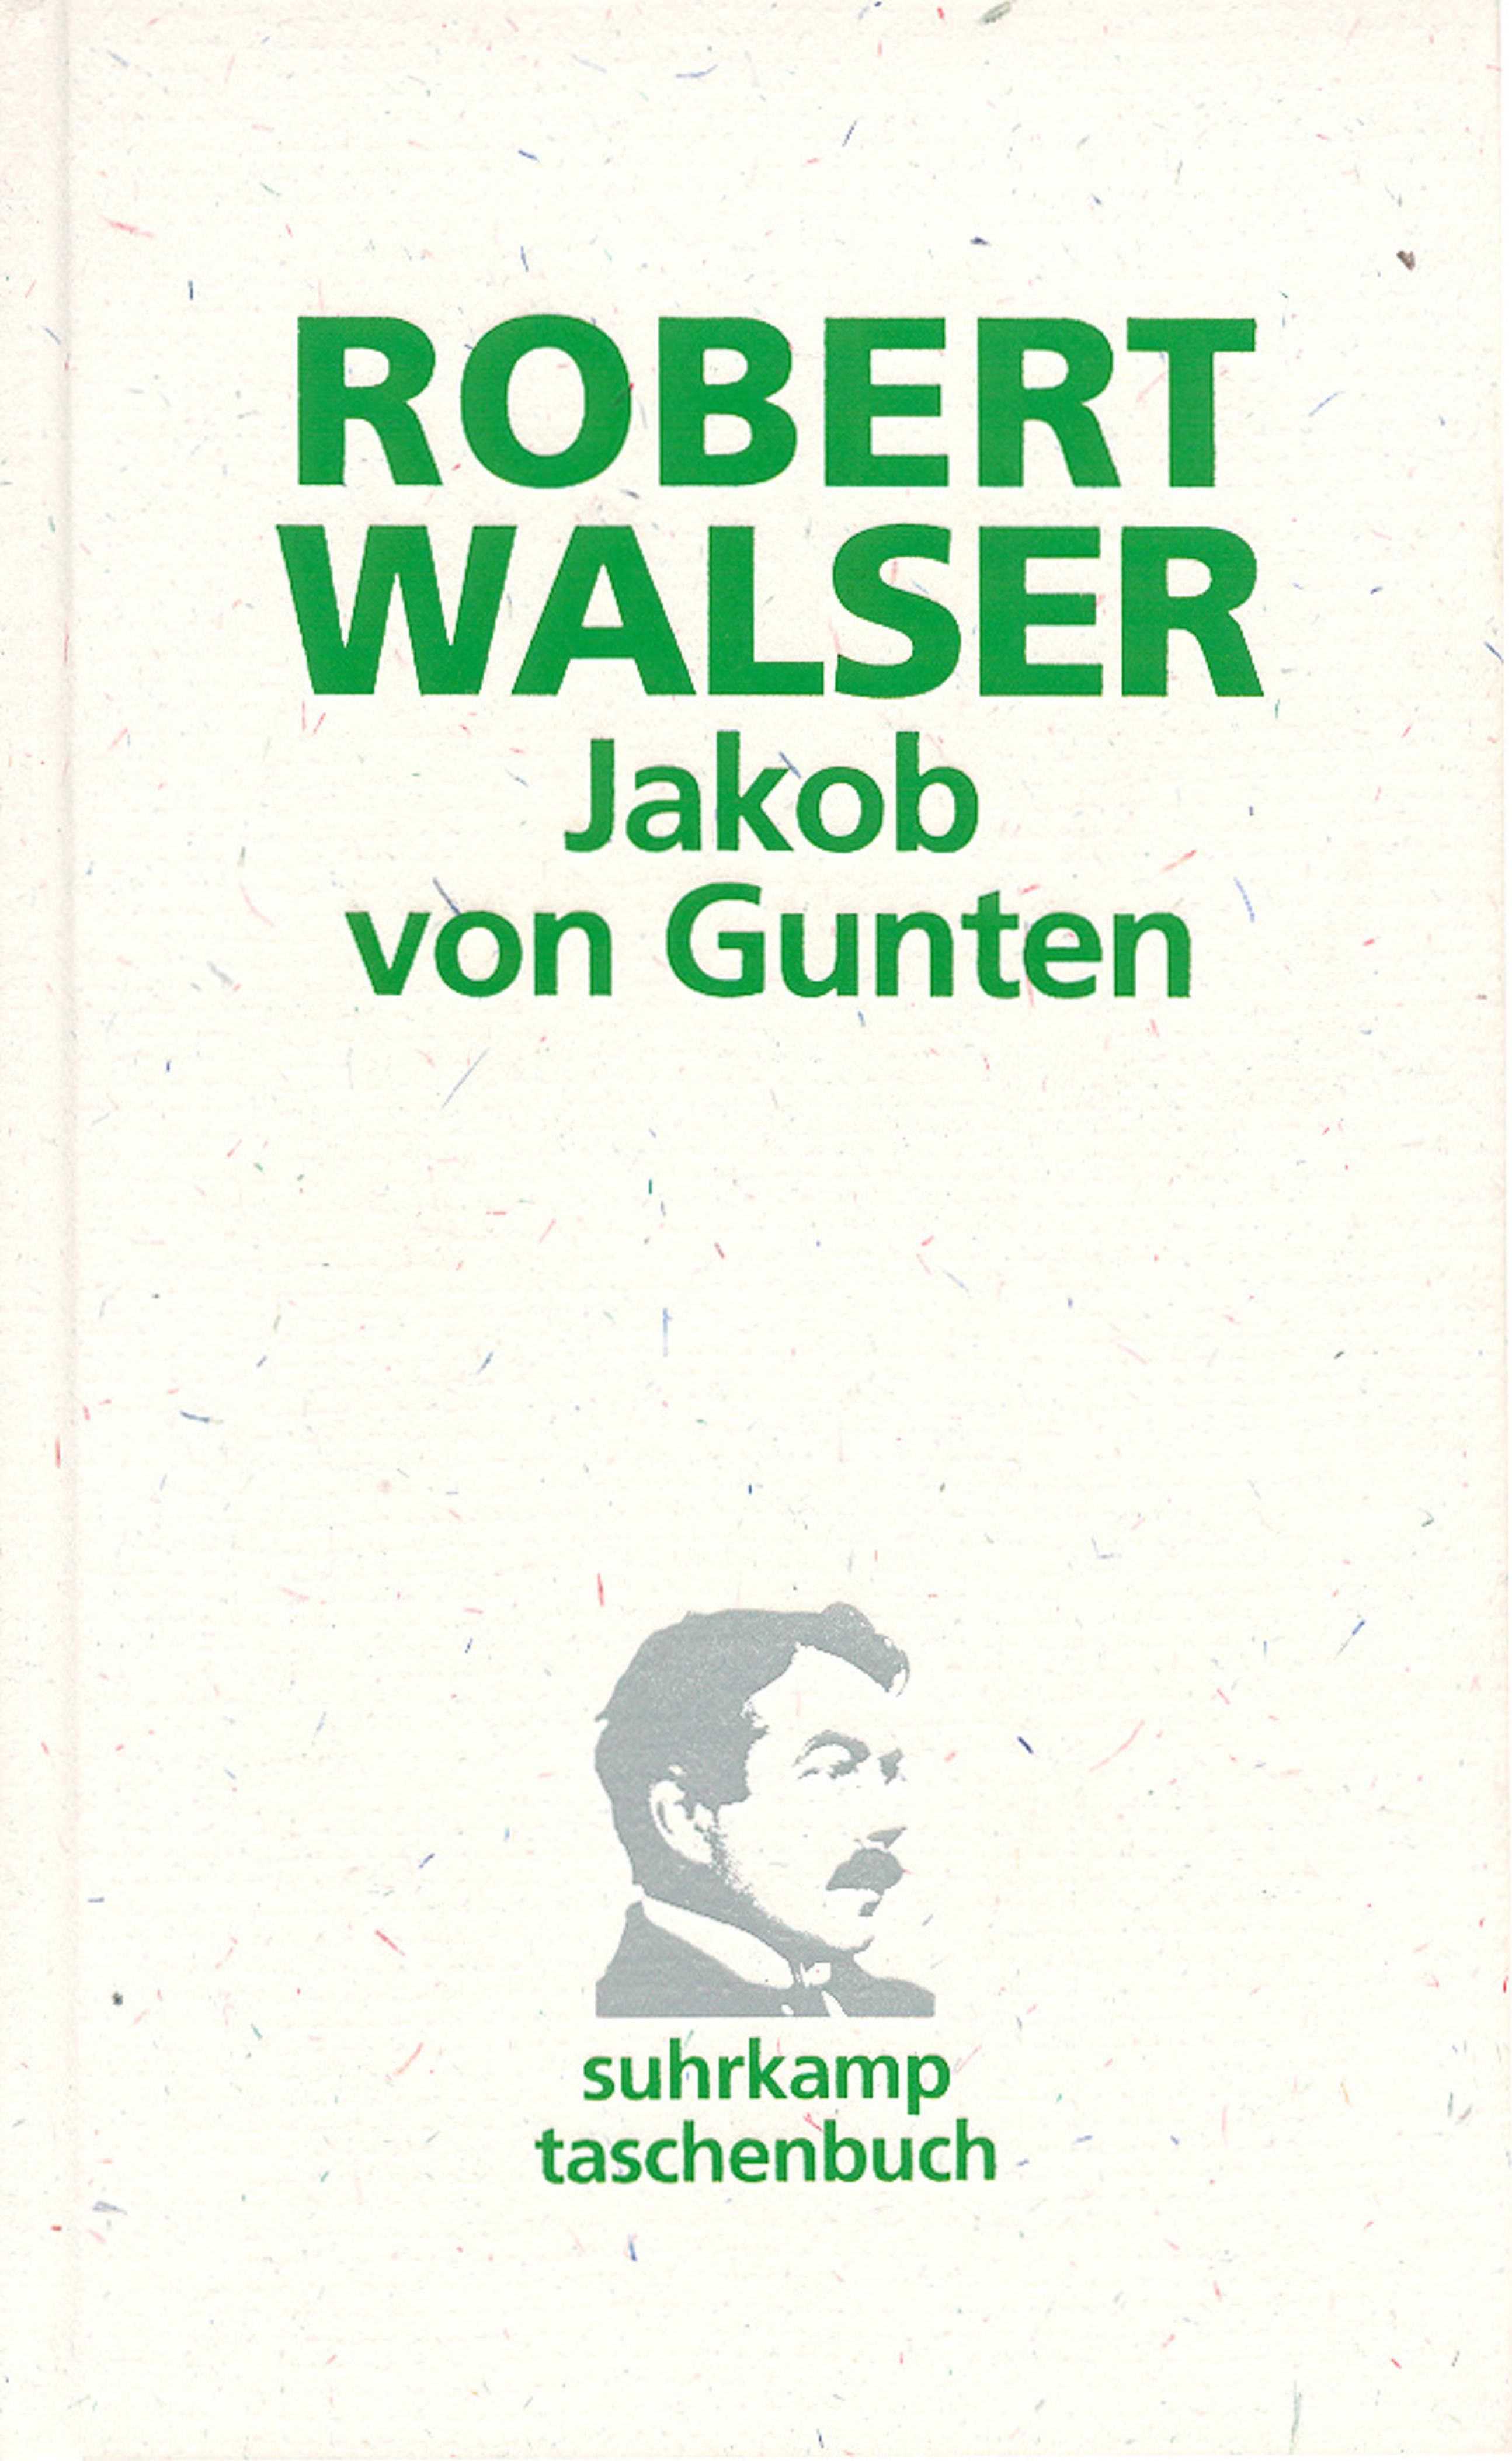 ROBERT Jakob von Gunten WALSER 